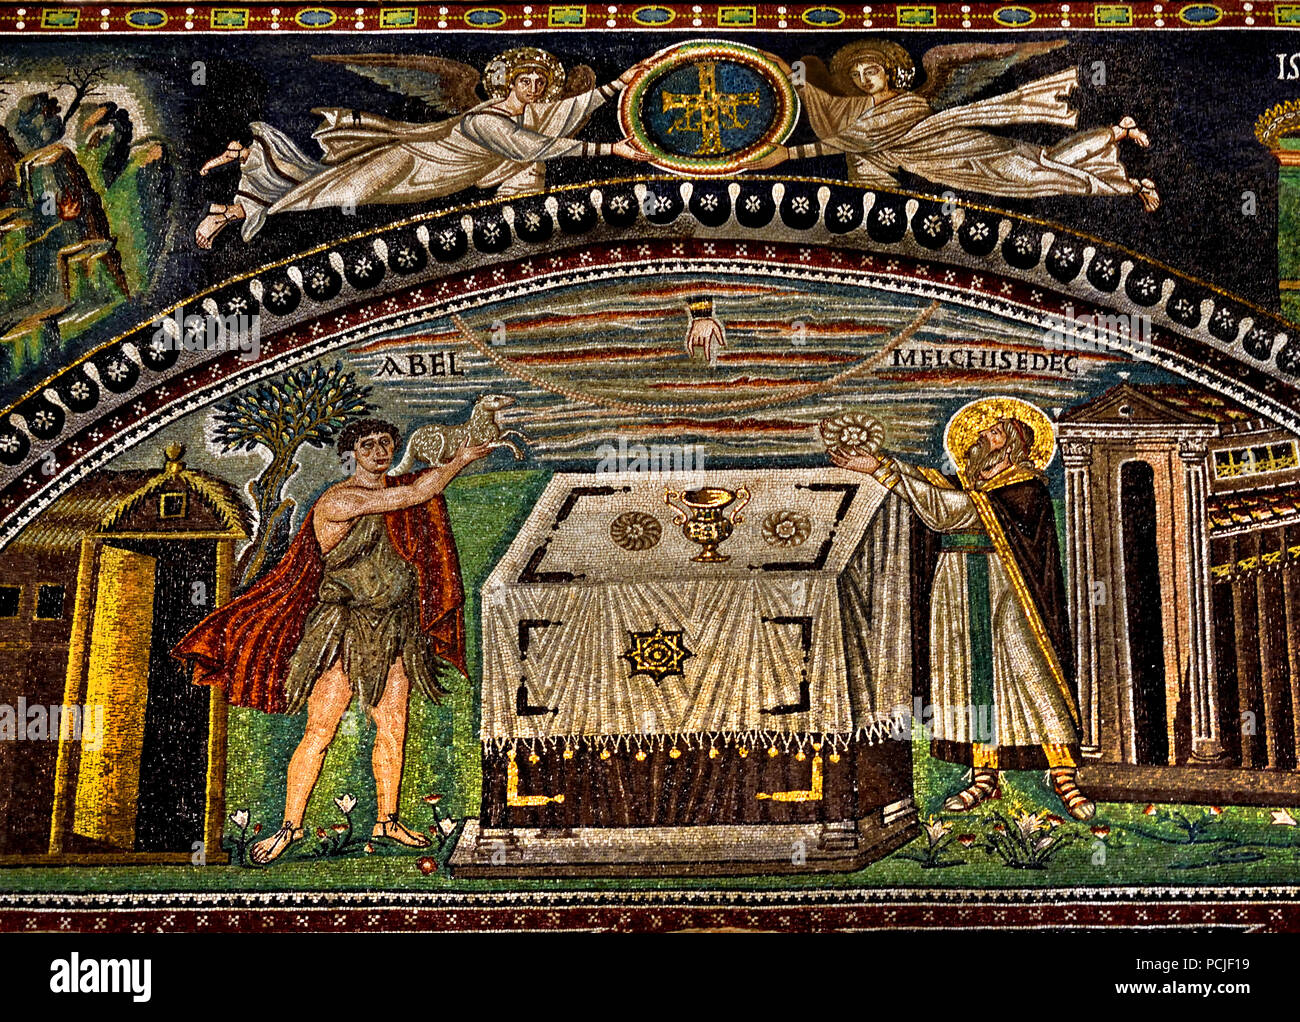 El sacrificio de Abel y Melquisedec en la Basílica de San Vitale 547 AD 6 siglo en Ravenna - Mosaicos ( tardía, la arquitectura romana y bizantina) - Emilia-Romaña en el norte de Italia. ( Sitio de Patrimonio Mundial de la UNESCO ). Foto de stock